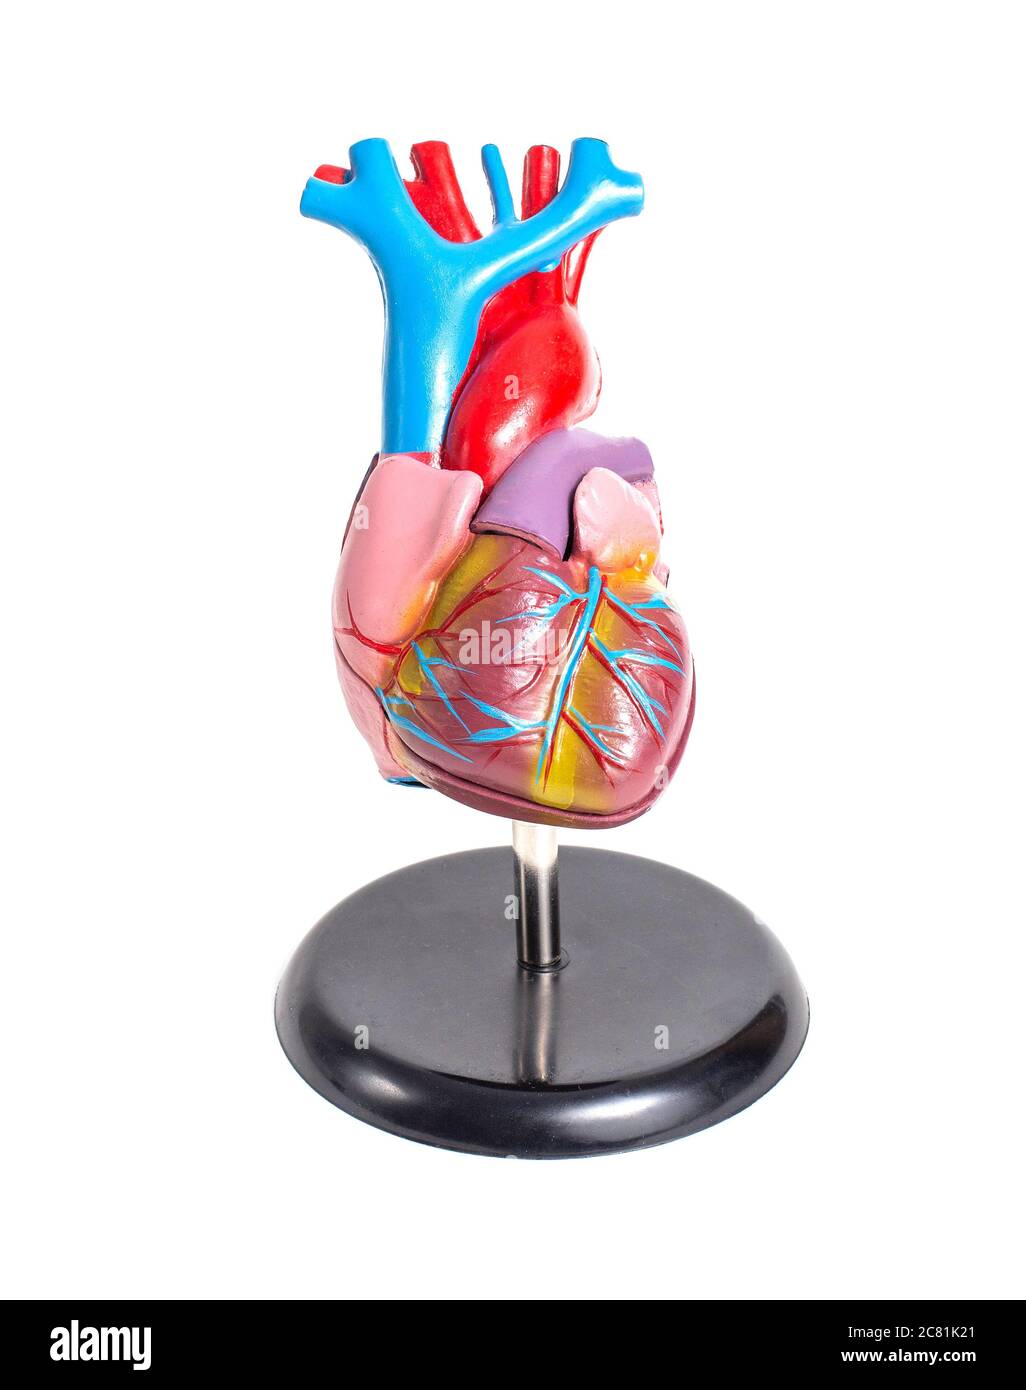 Simulazione di un cuore di organo umano su uno sfondo bianco, isolare. Struttura anatomica e fisiologia del cuore, del ventricolo destro e sinistro e dell'atrio. Foto Stock